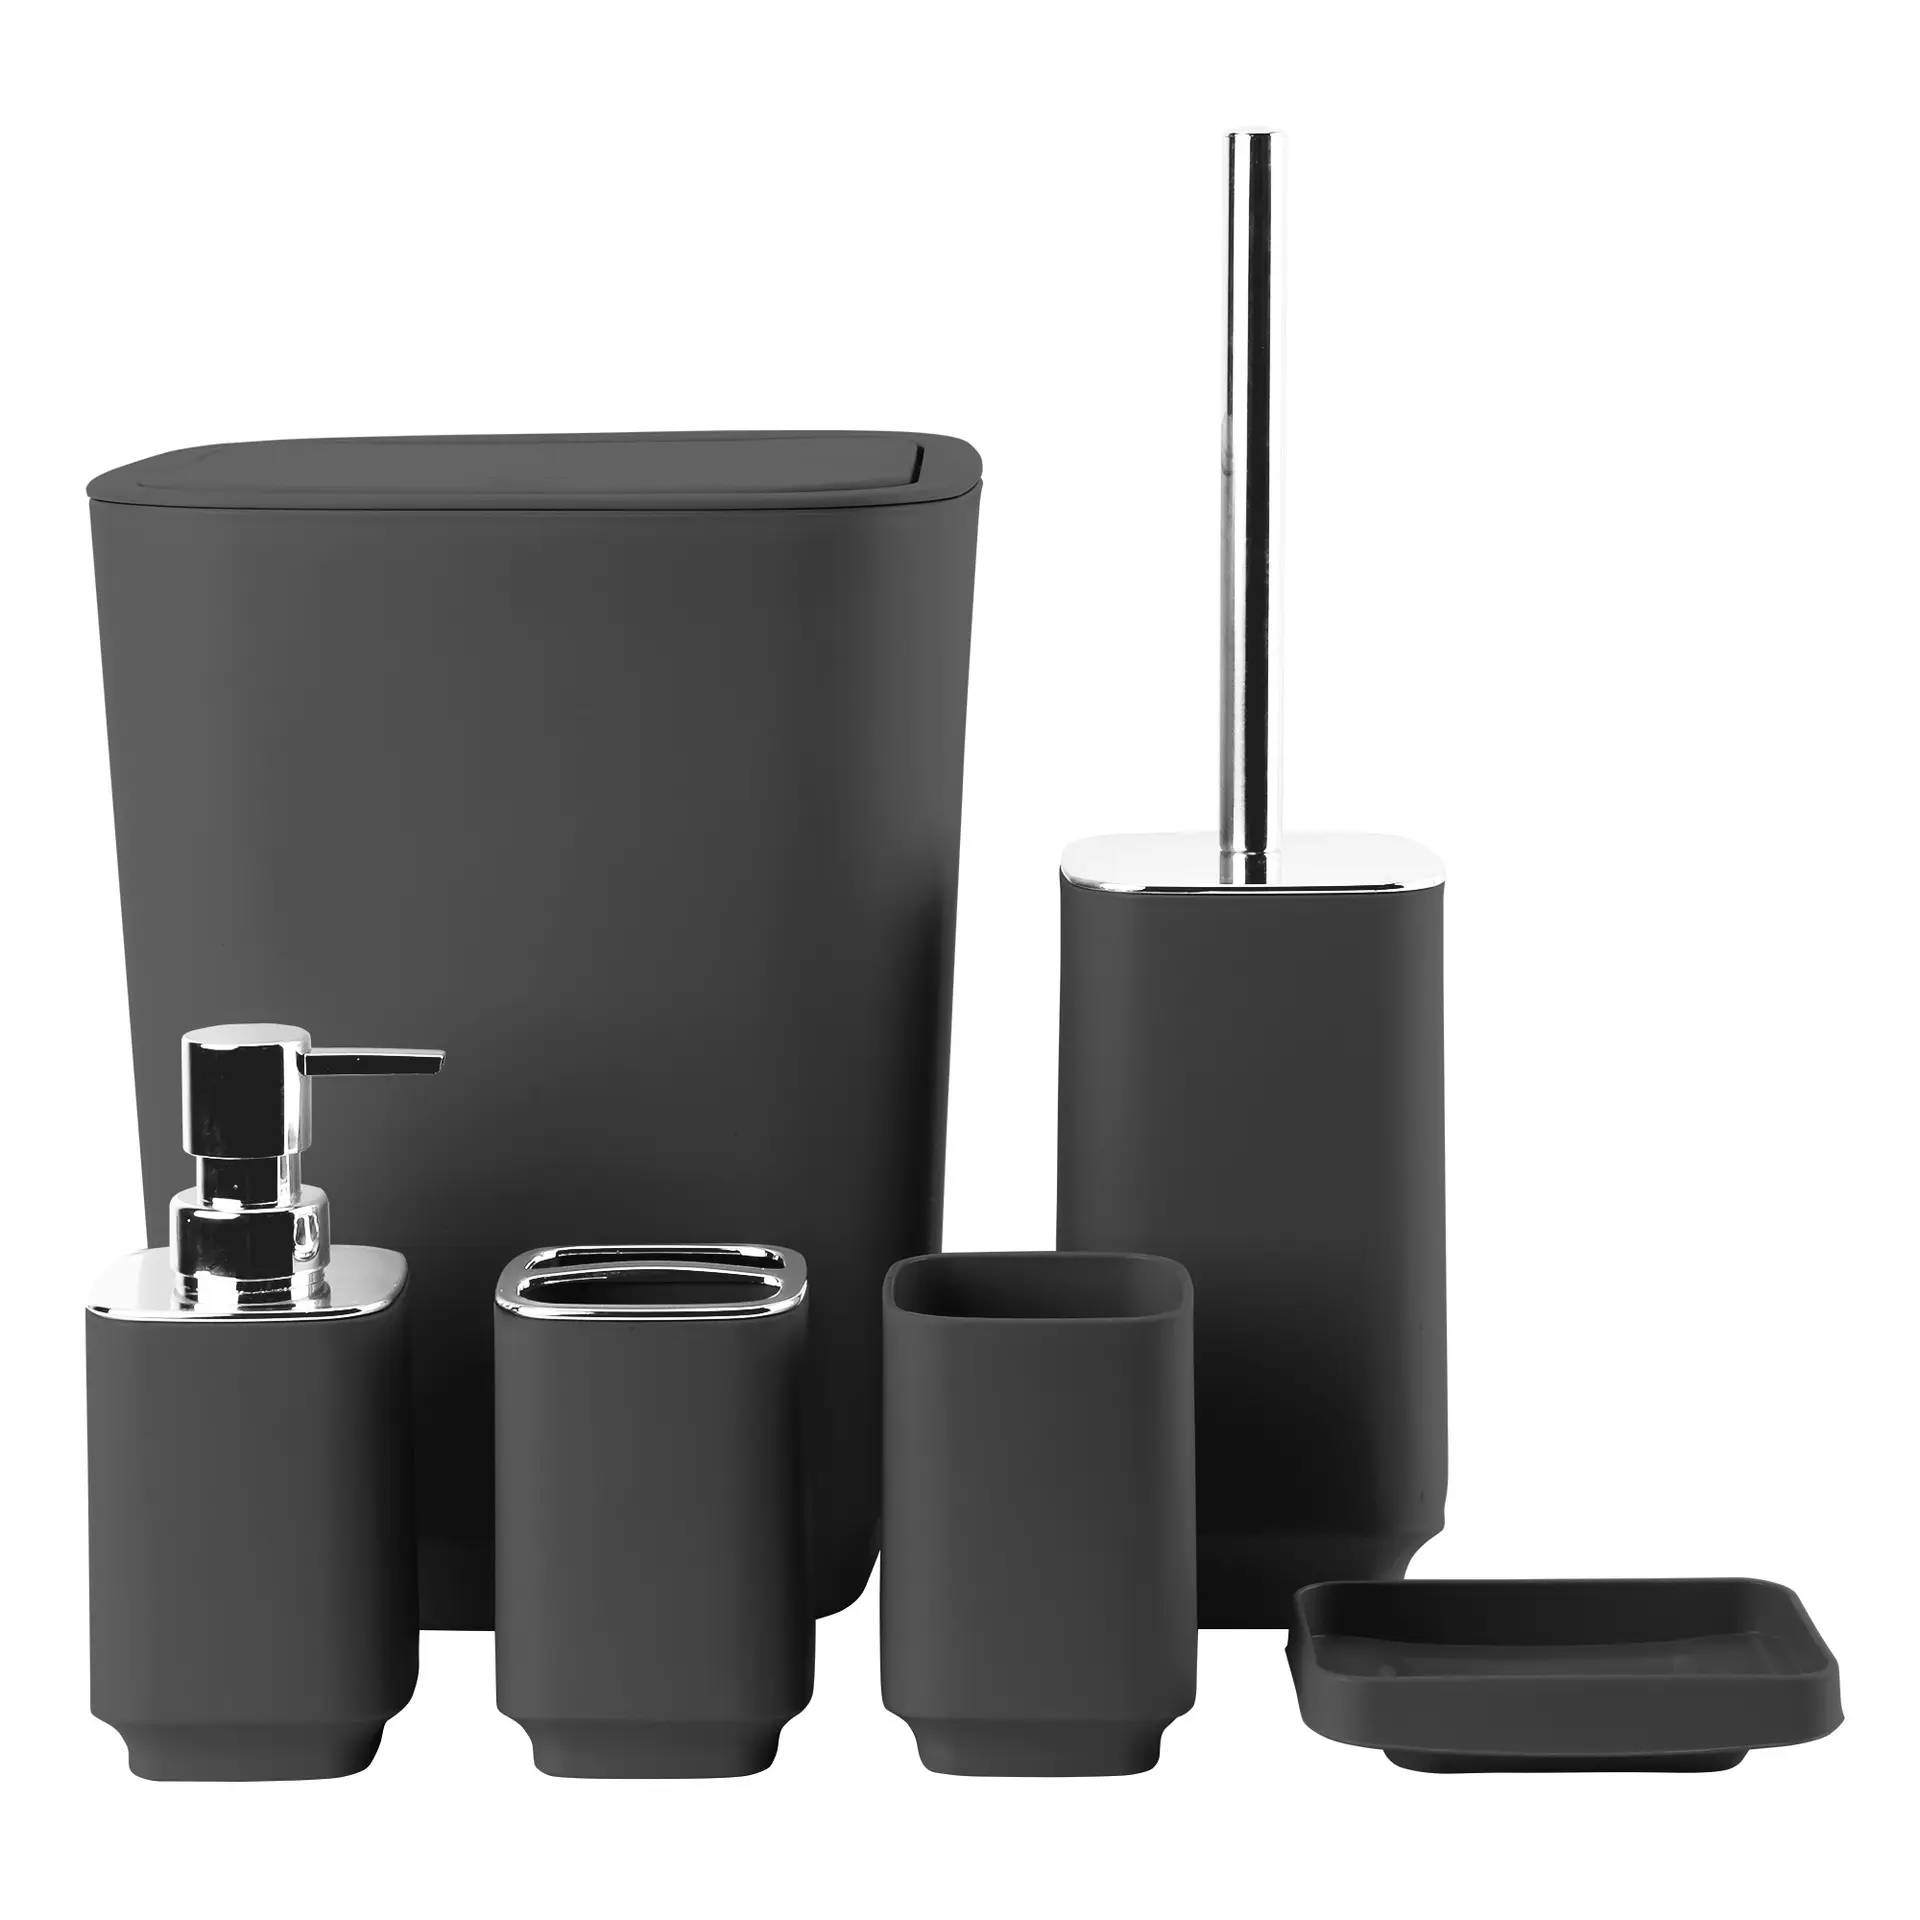 Livraison rapide en plastique ABS bambou fournitures de salle de bain ensemble d'accessoires de salle de bain